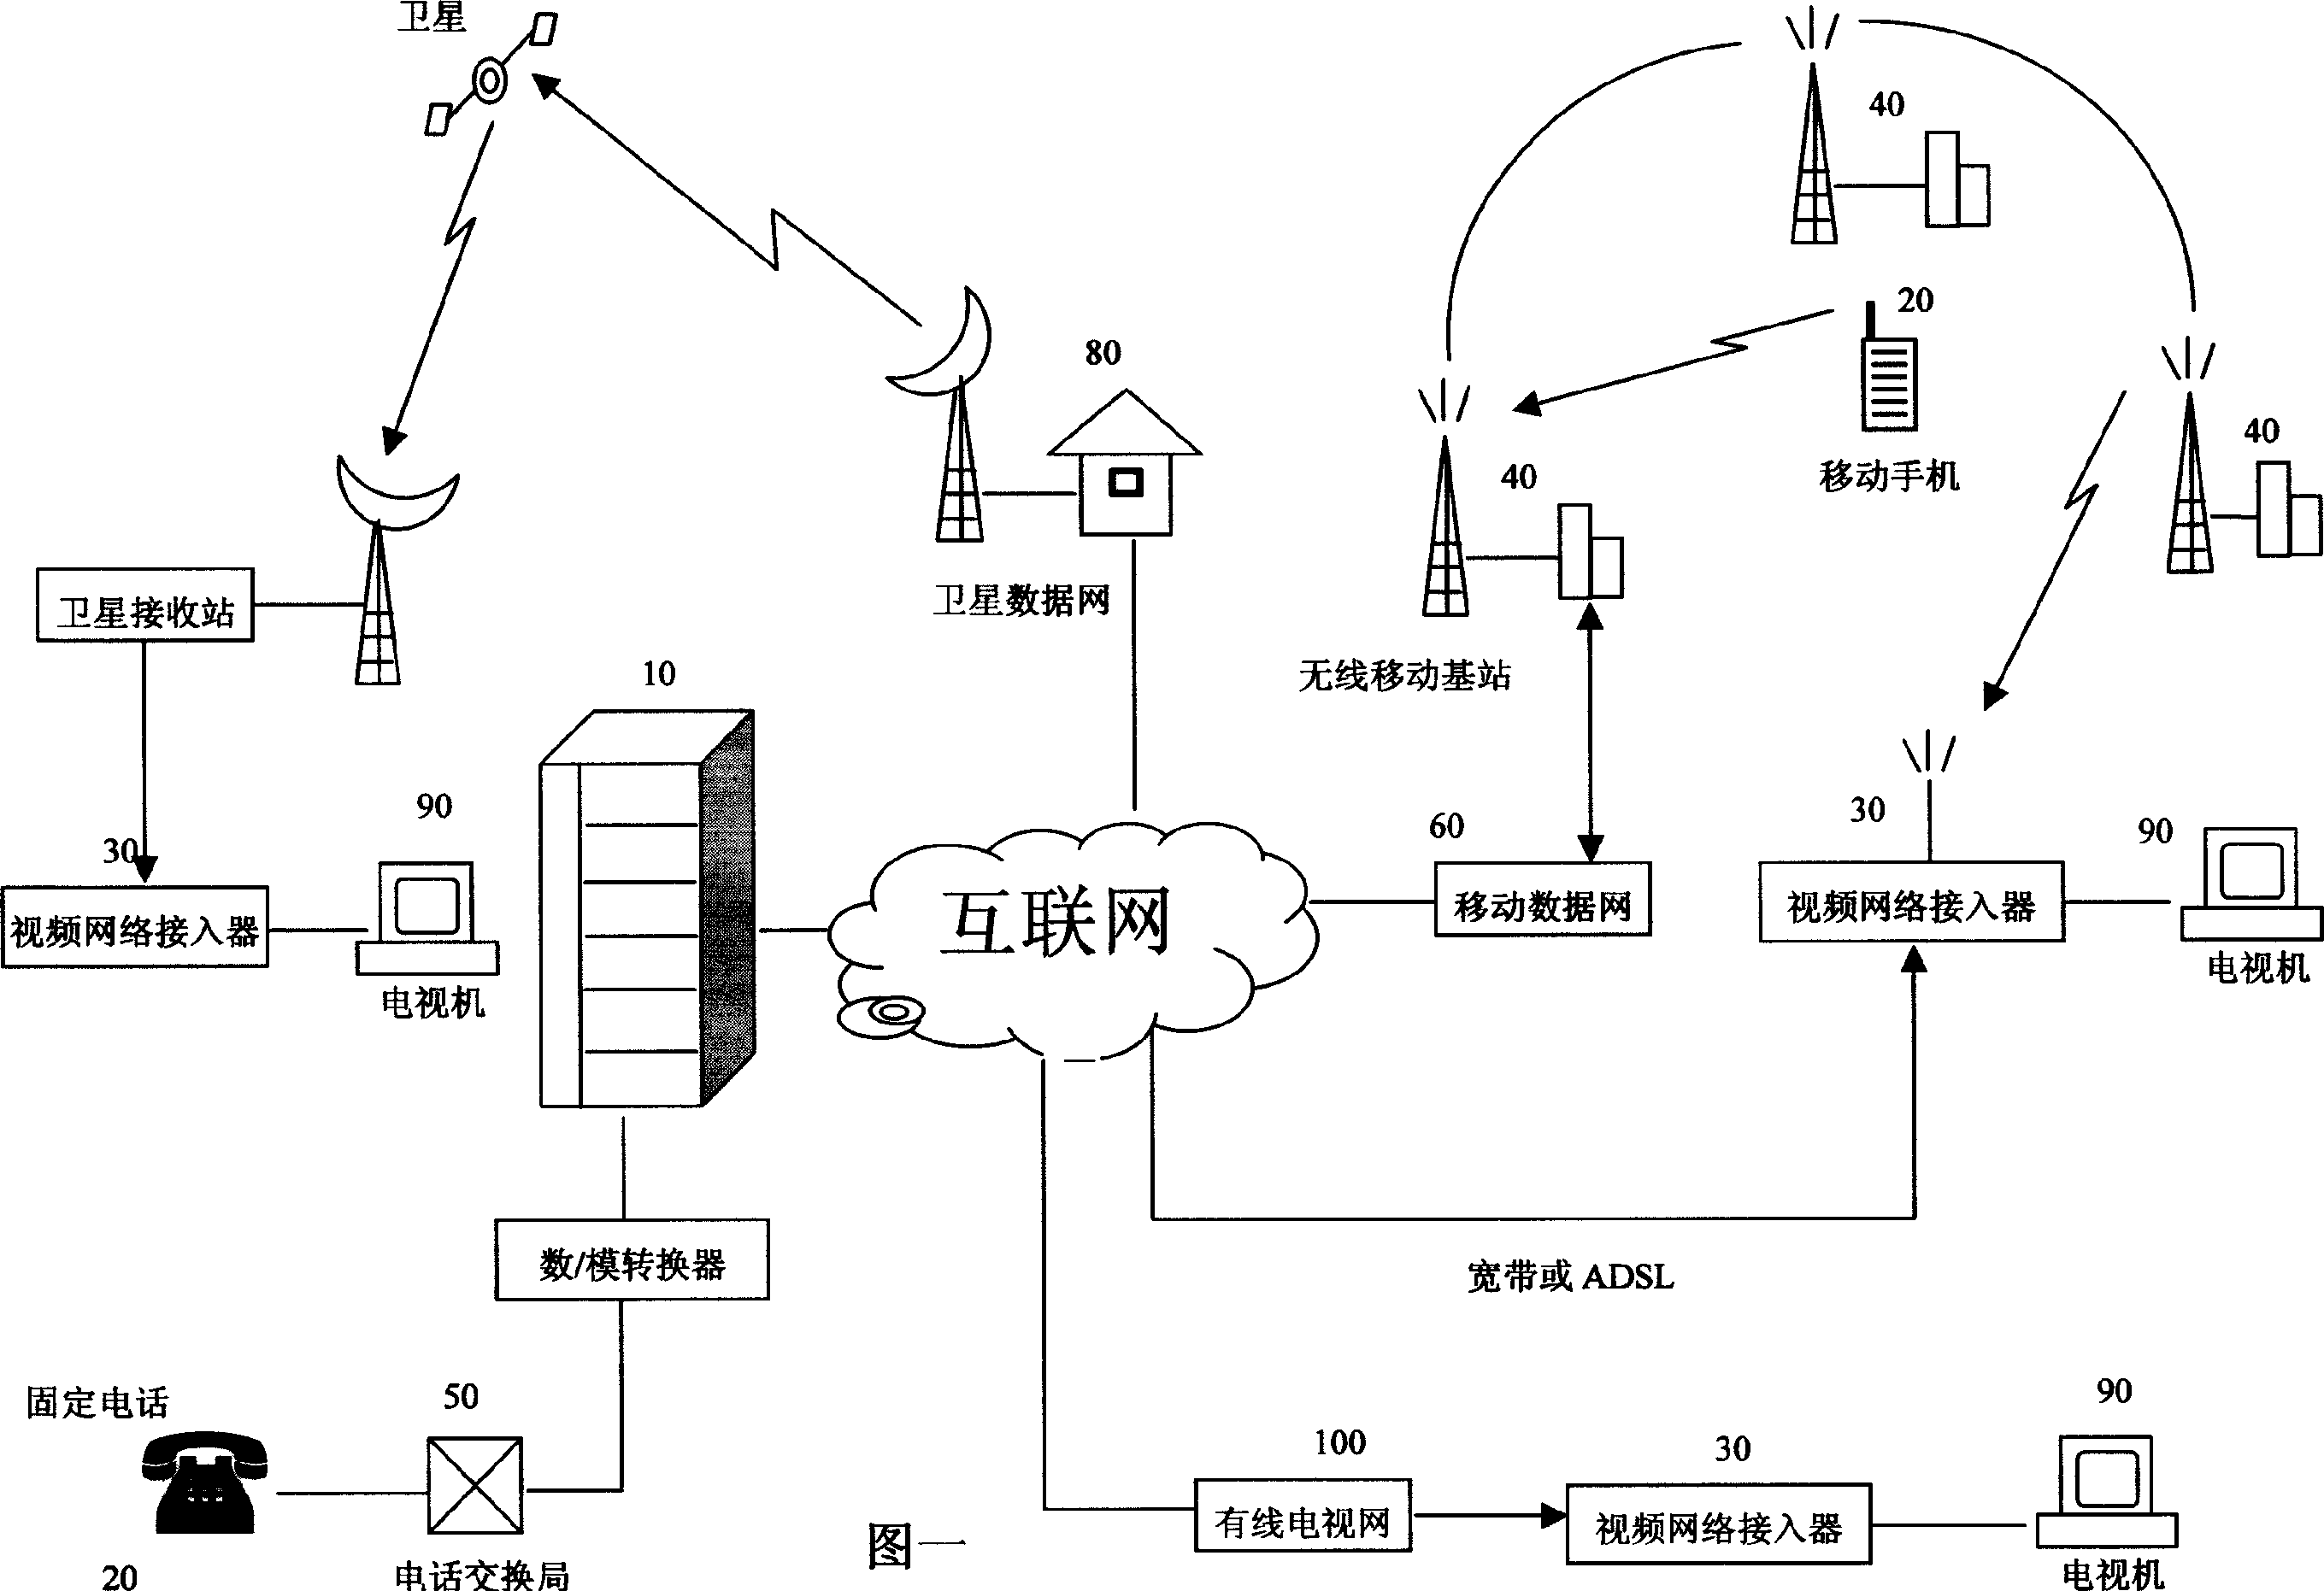 Method for demanding program on data network using mobile telephone or line telephone